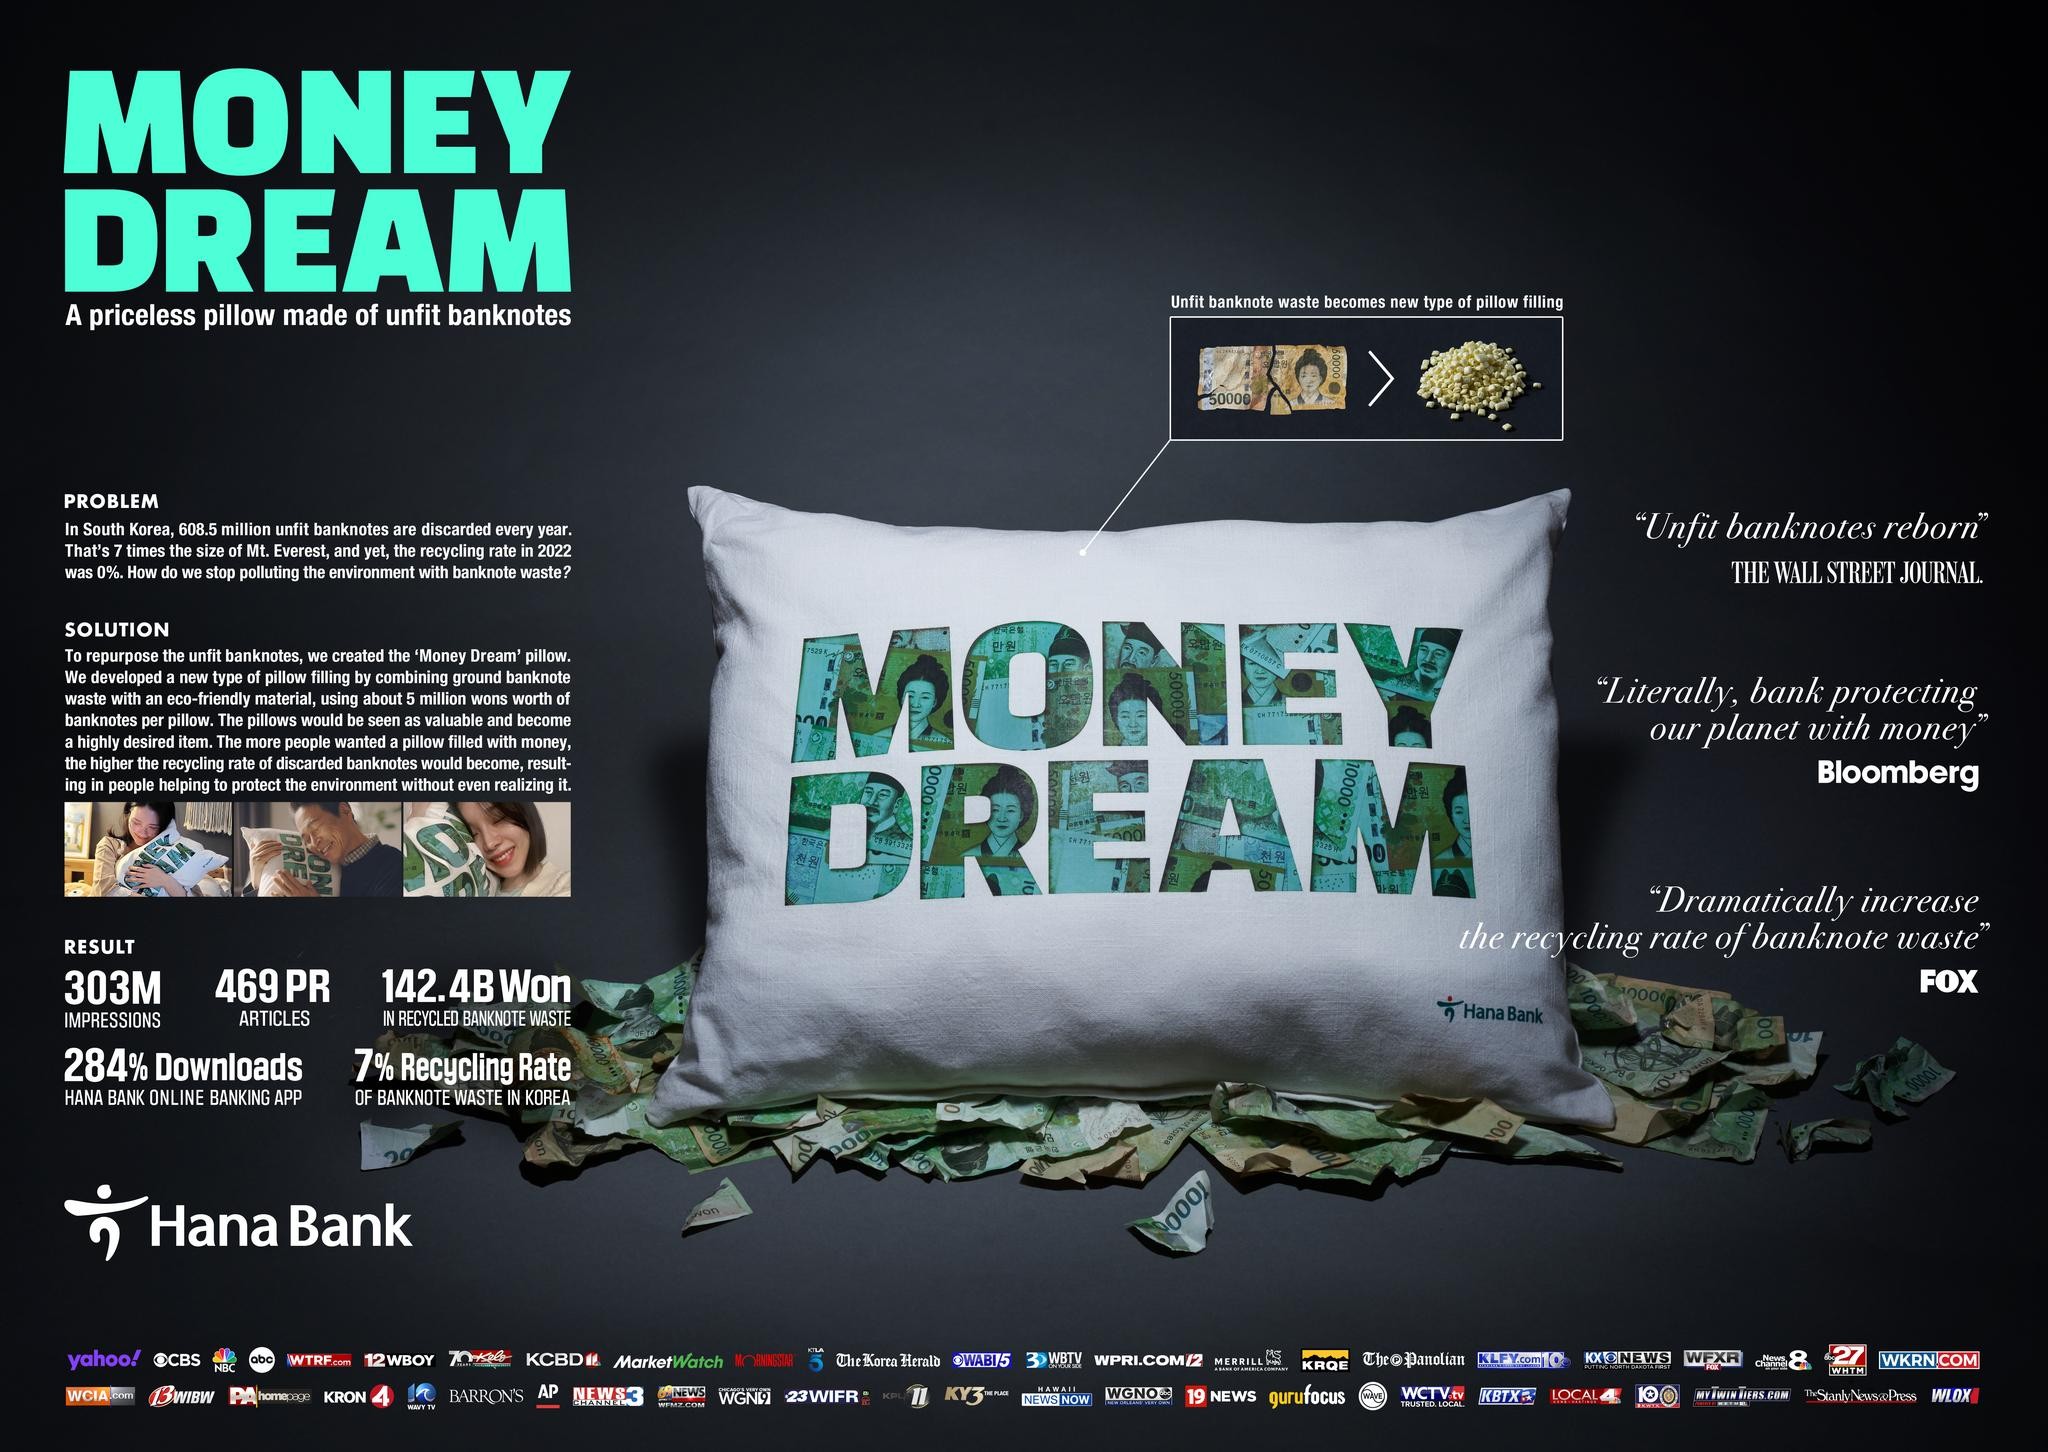 MONEY DREAM